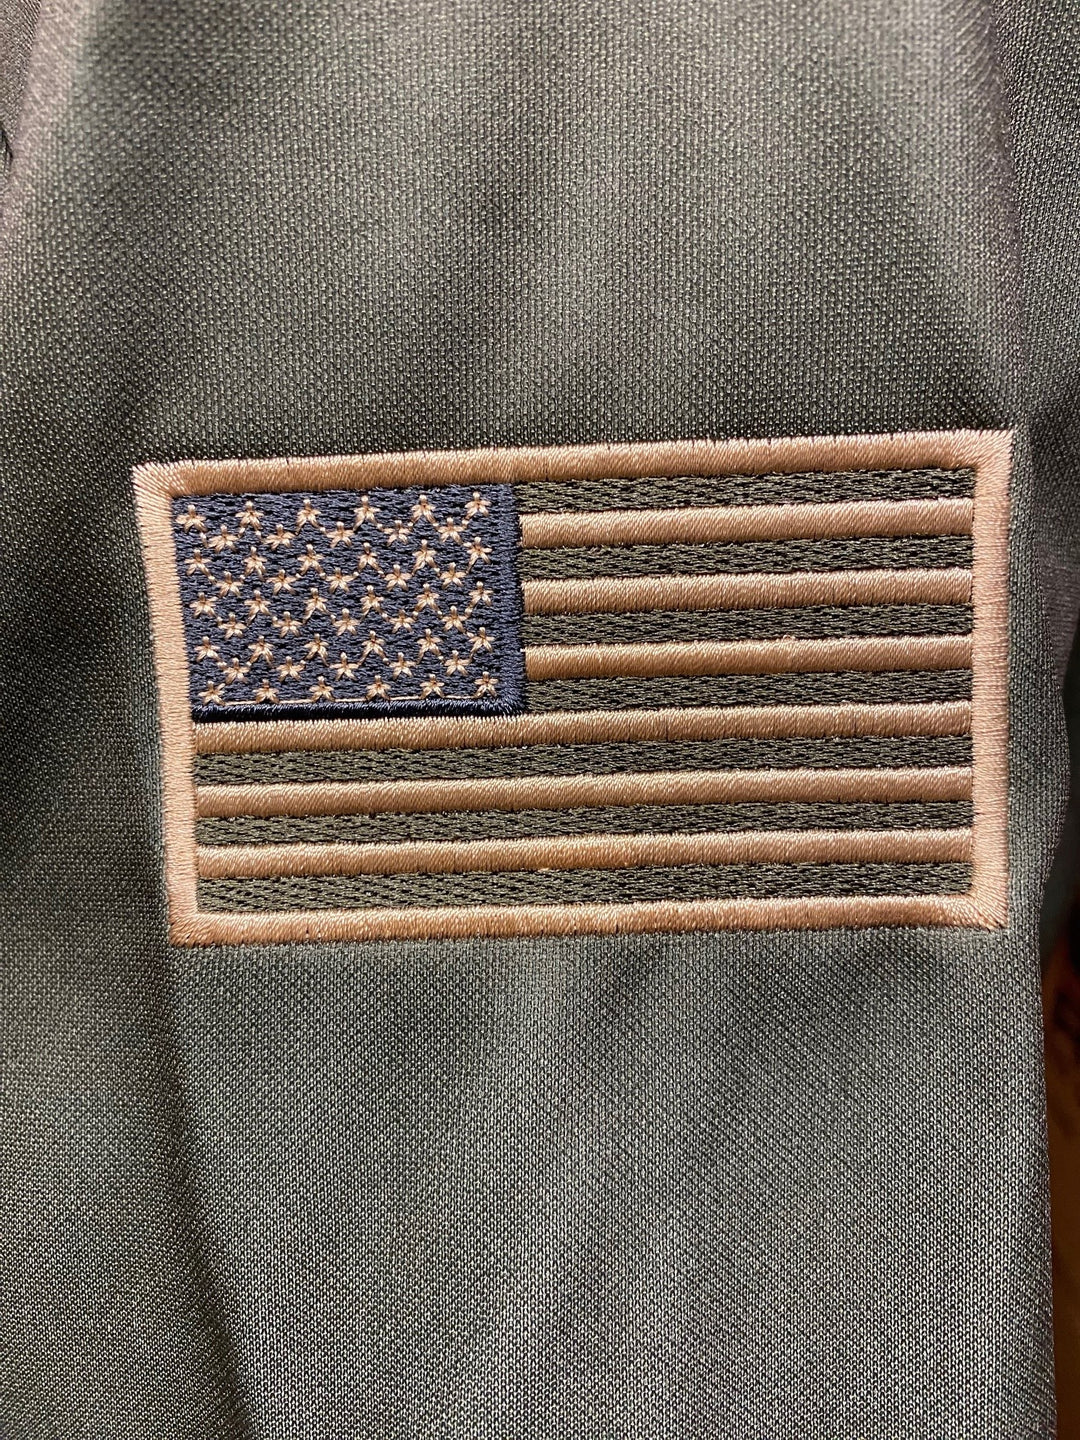 Military Appreciation Sweatshirt